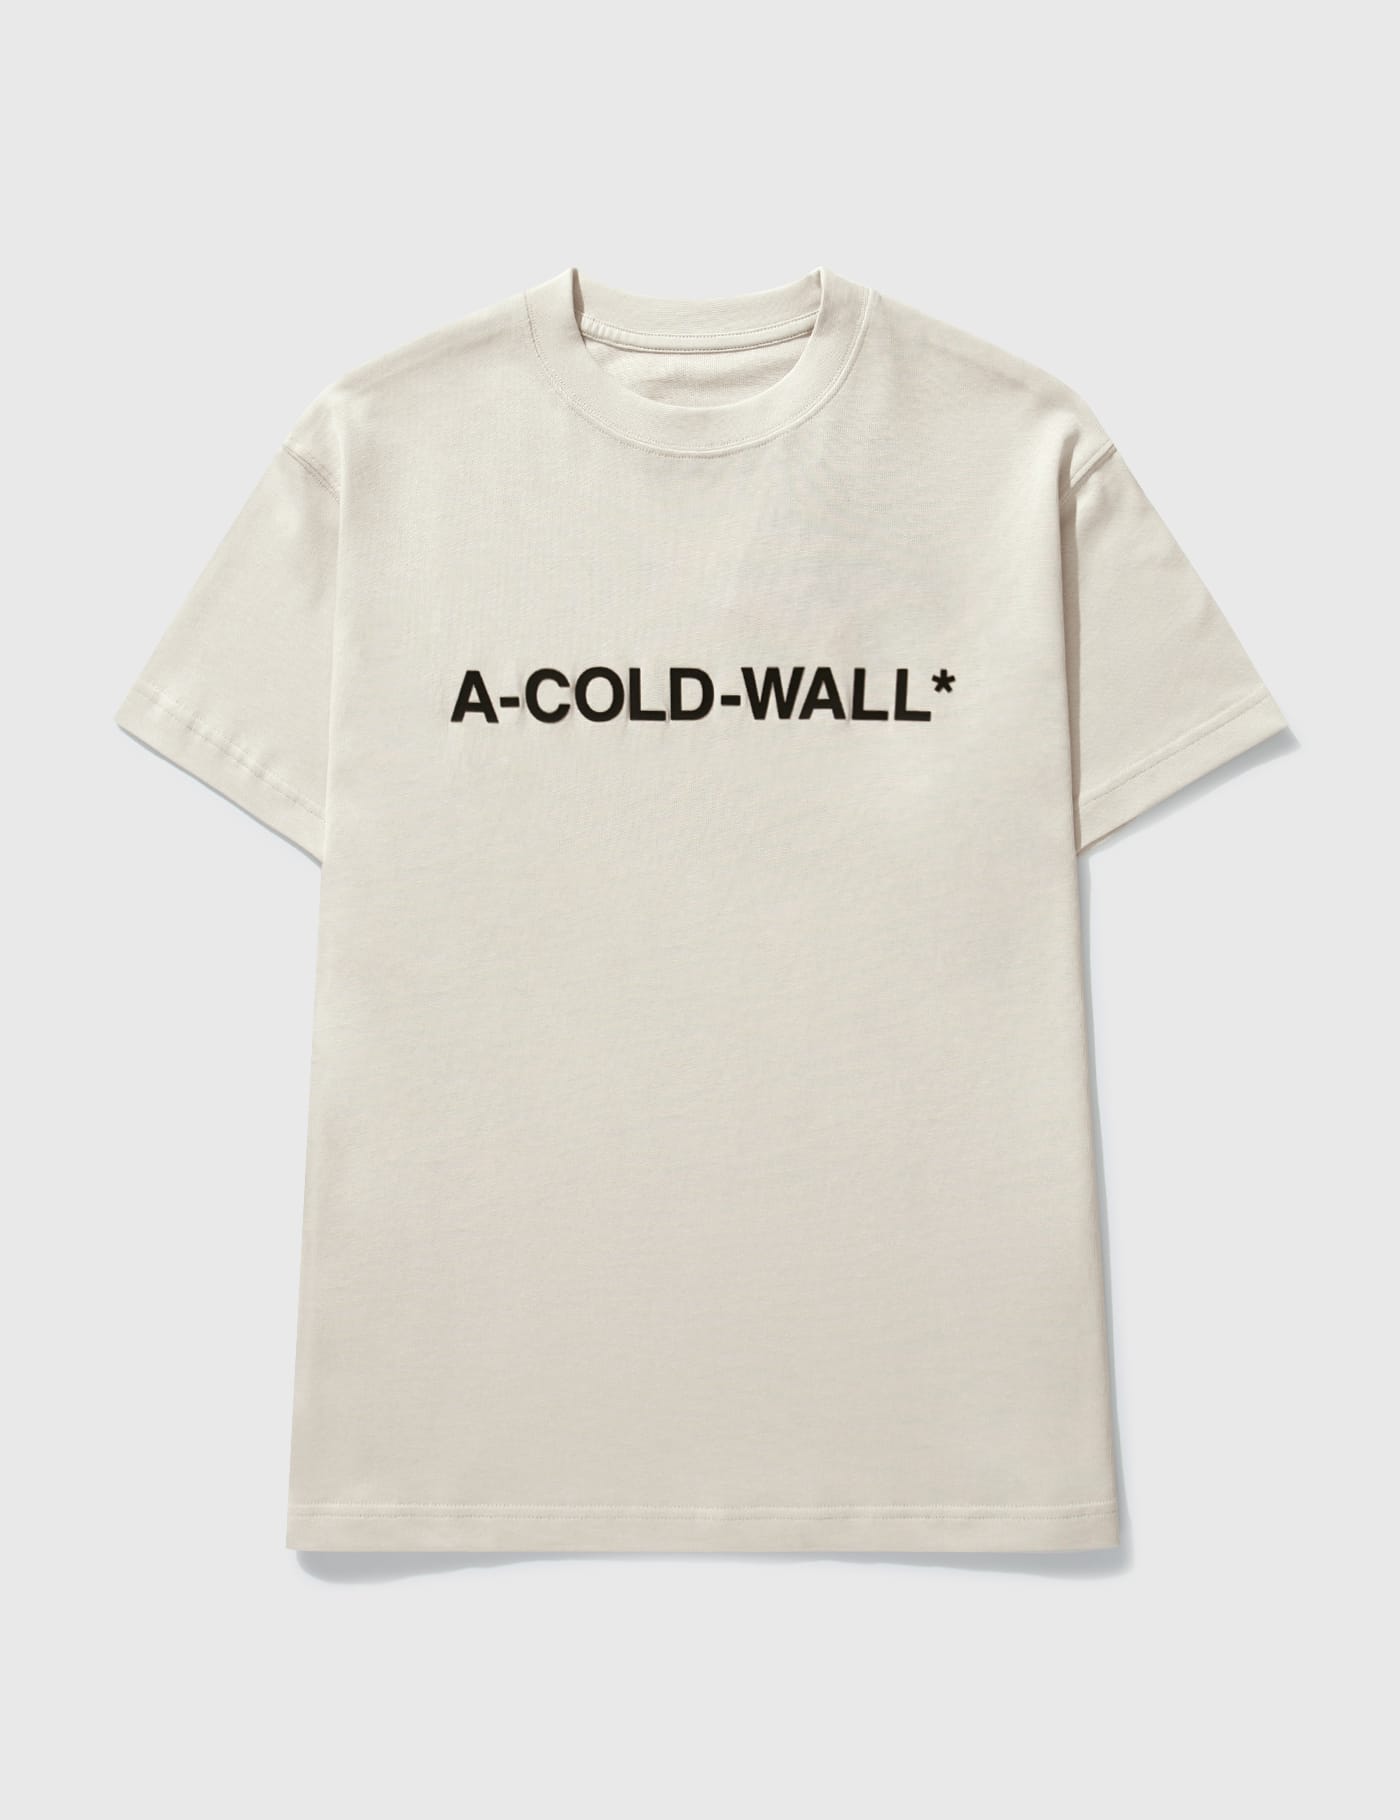 A-COLD-WALL* - ブルータリスト Tシャツ | HBX - ハイプビースト 